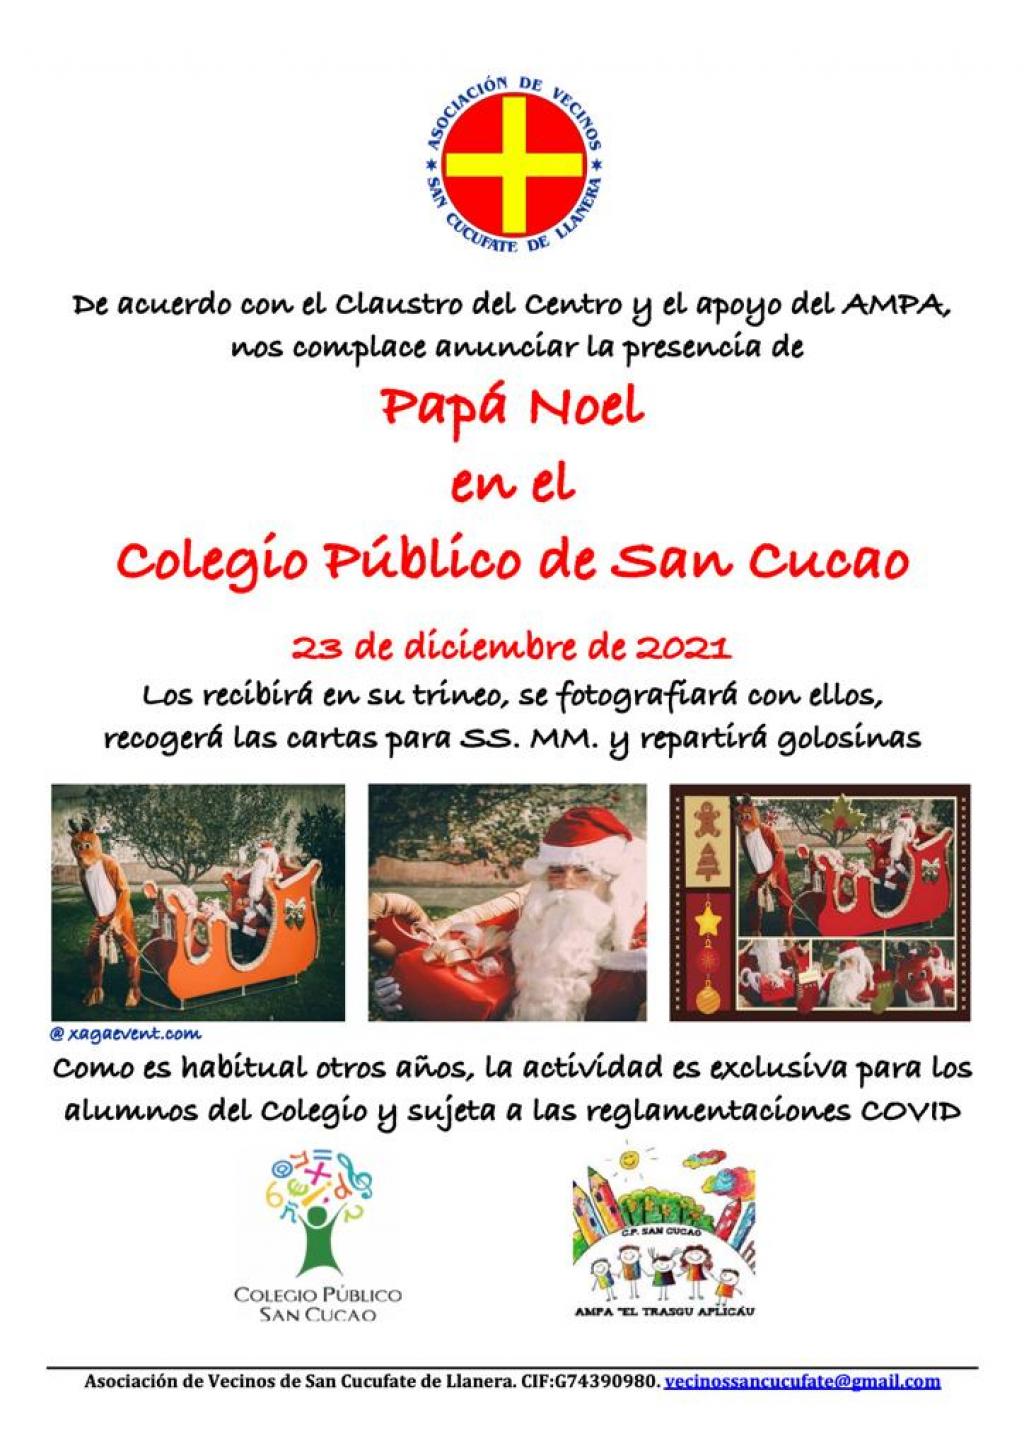 El Tapin - La Asociación de Vecinos de San Cucufate organiza la visita de Papa Noel al colegio público de San Cucao el 23 de diciembre